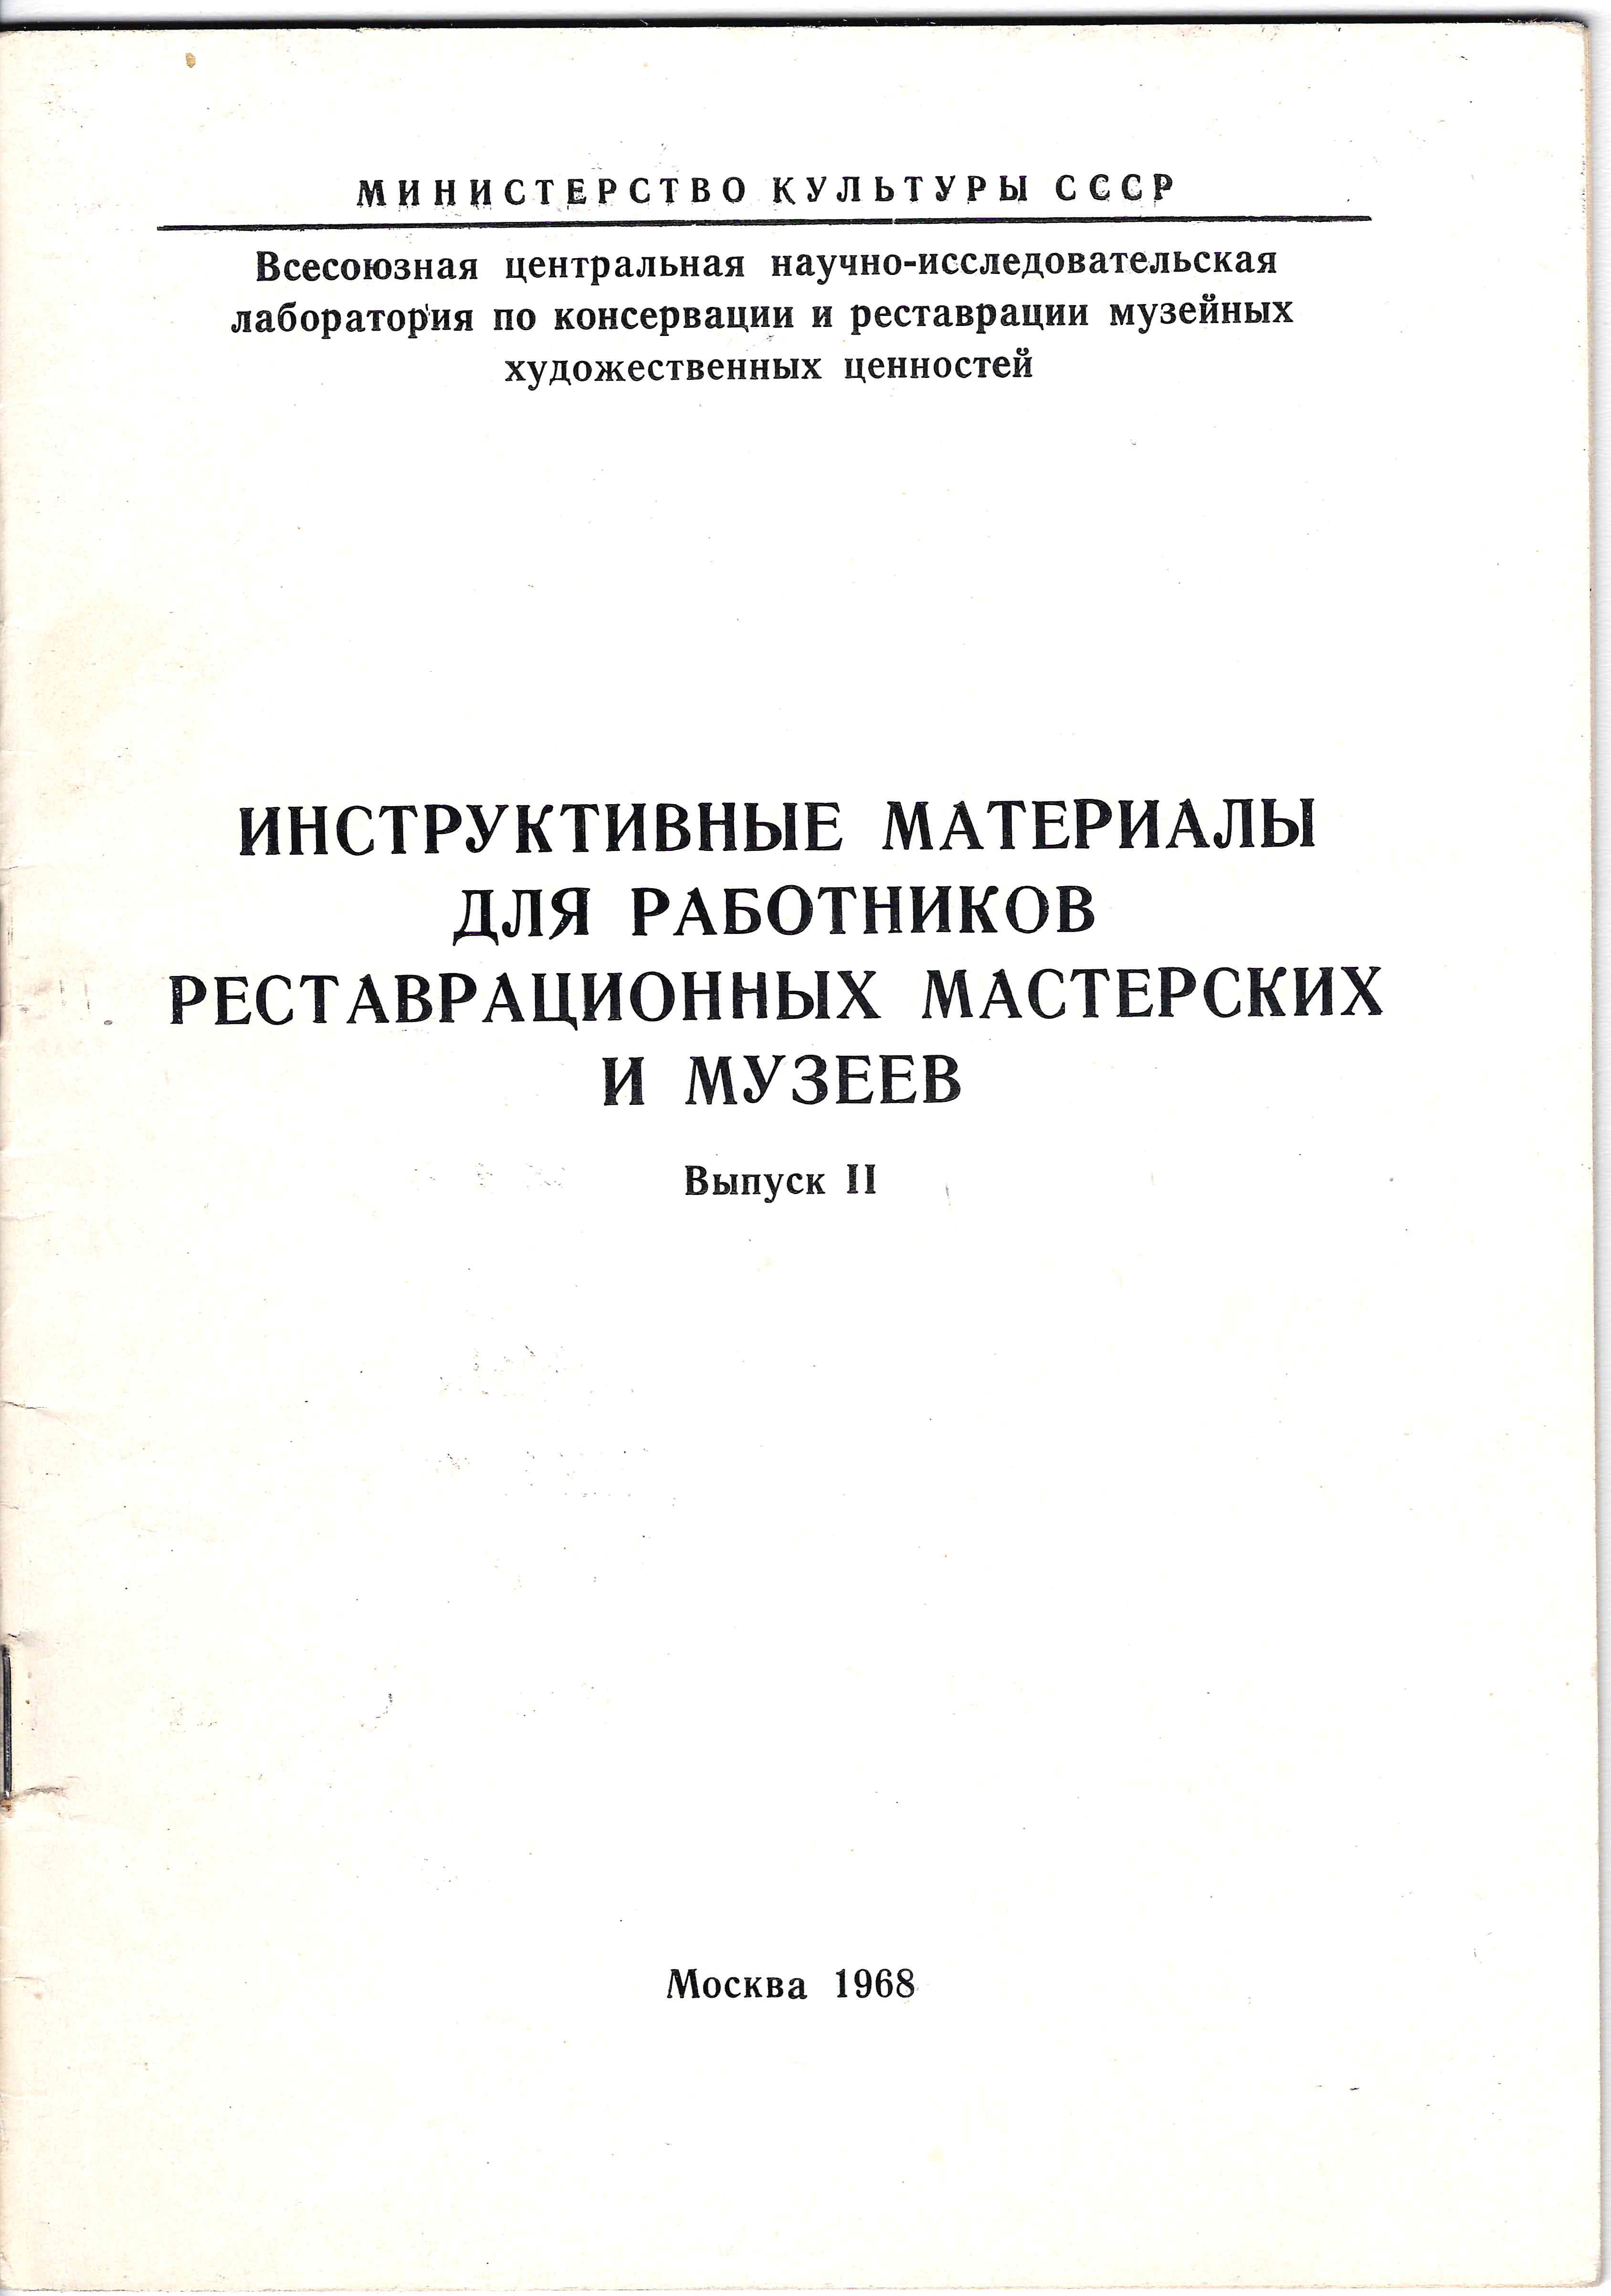 Инструктивные материалы для работников реставрационных мастерских и музеев. Выпуск II (М., 1968).